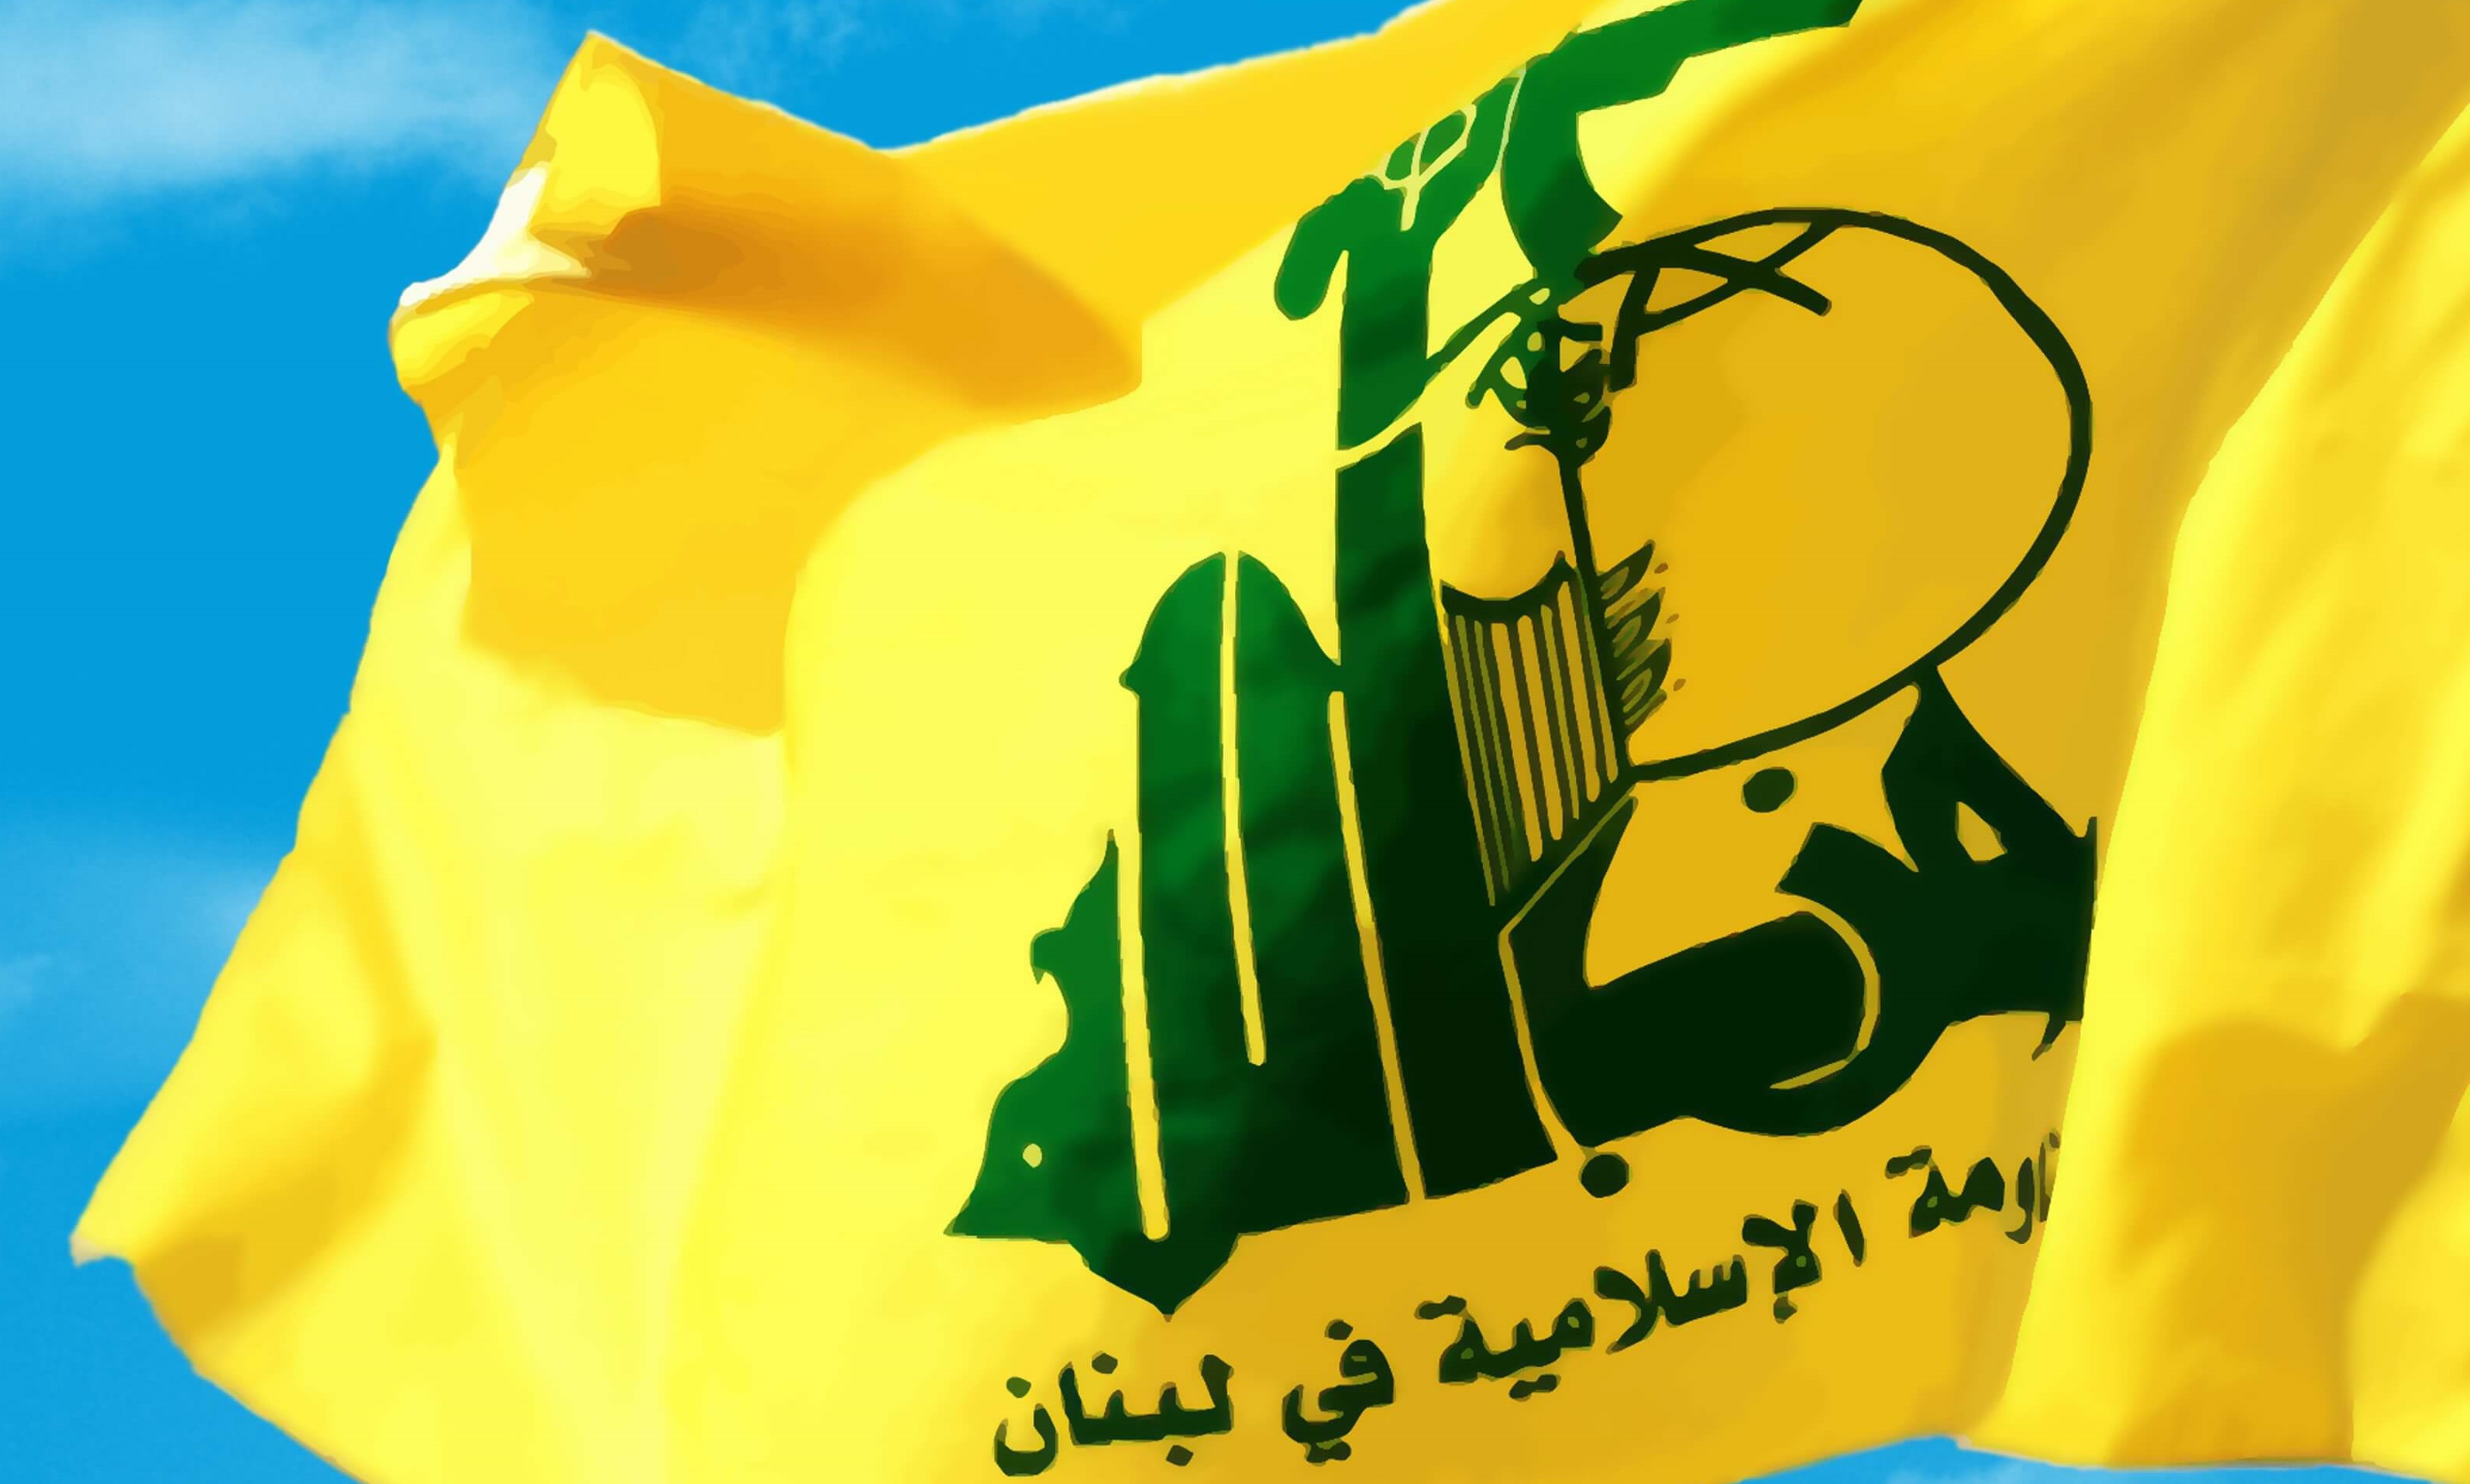 Lebanese Hezbollah slams Saudis' crimes in Yemen